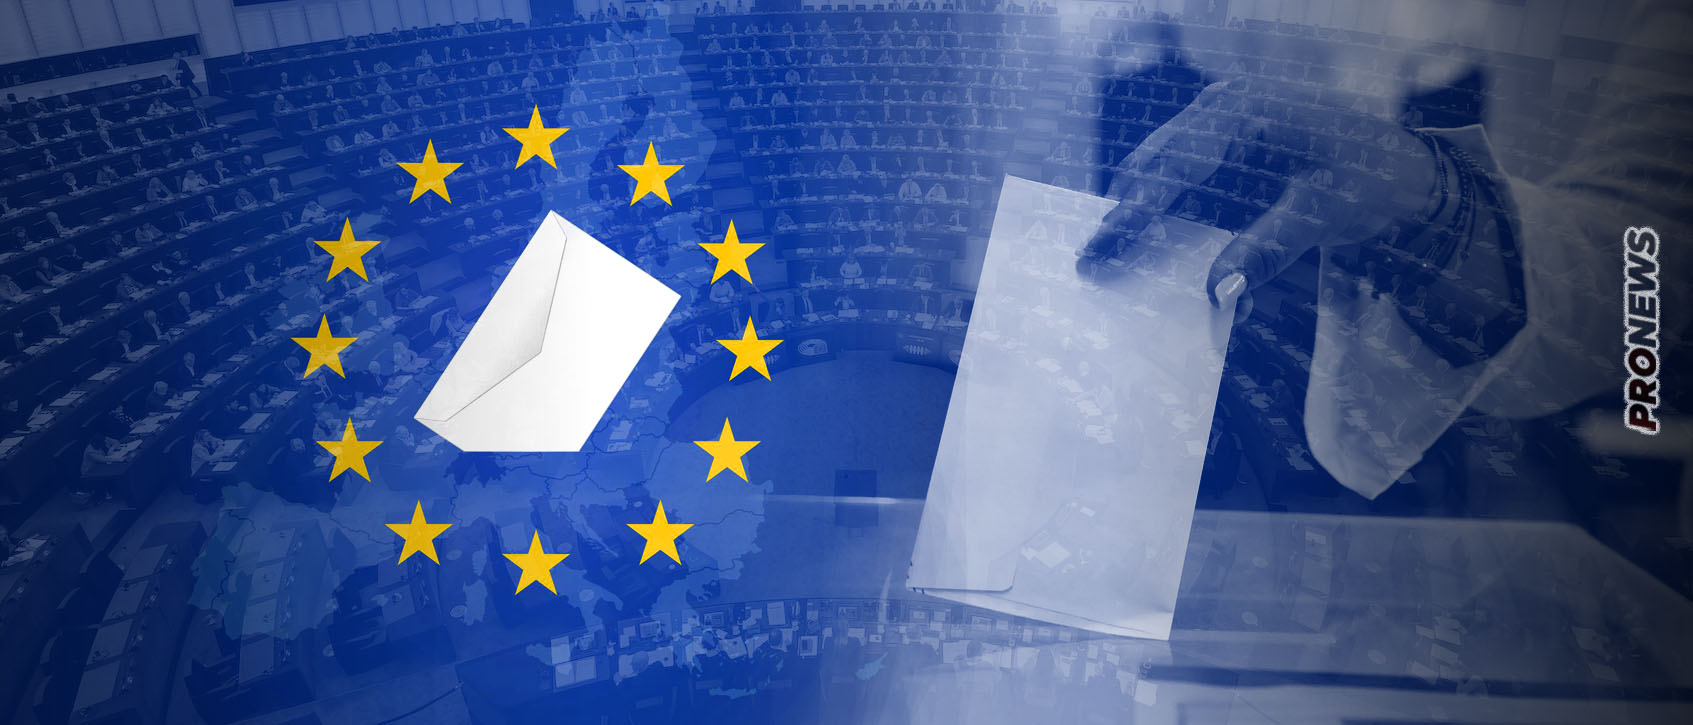 Ευρωεκλογές: Πάνω από 25% διεκδικούν τα δεξιά κόμματα σε όλη την ΕΕ – Η περίπτωση της Ελλάδας